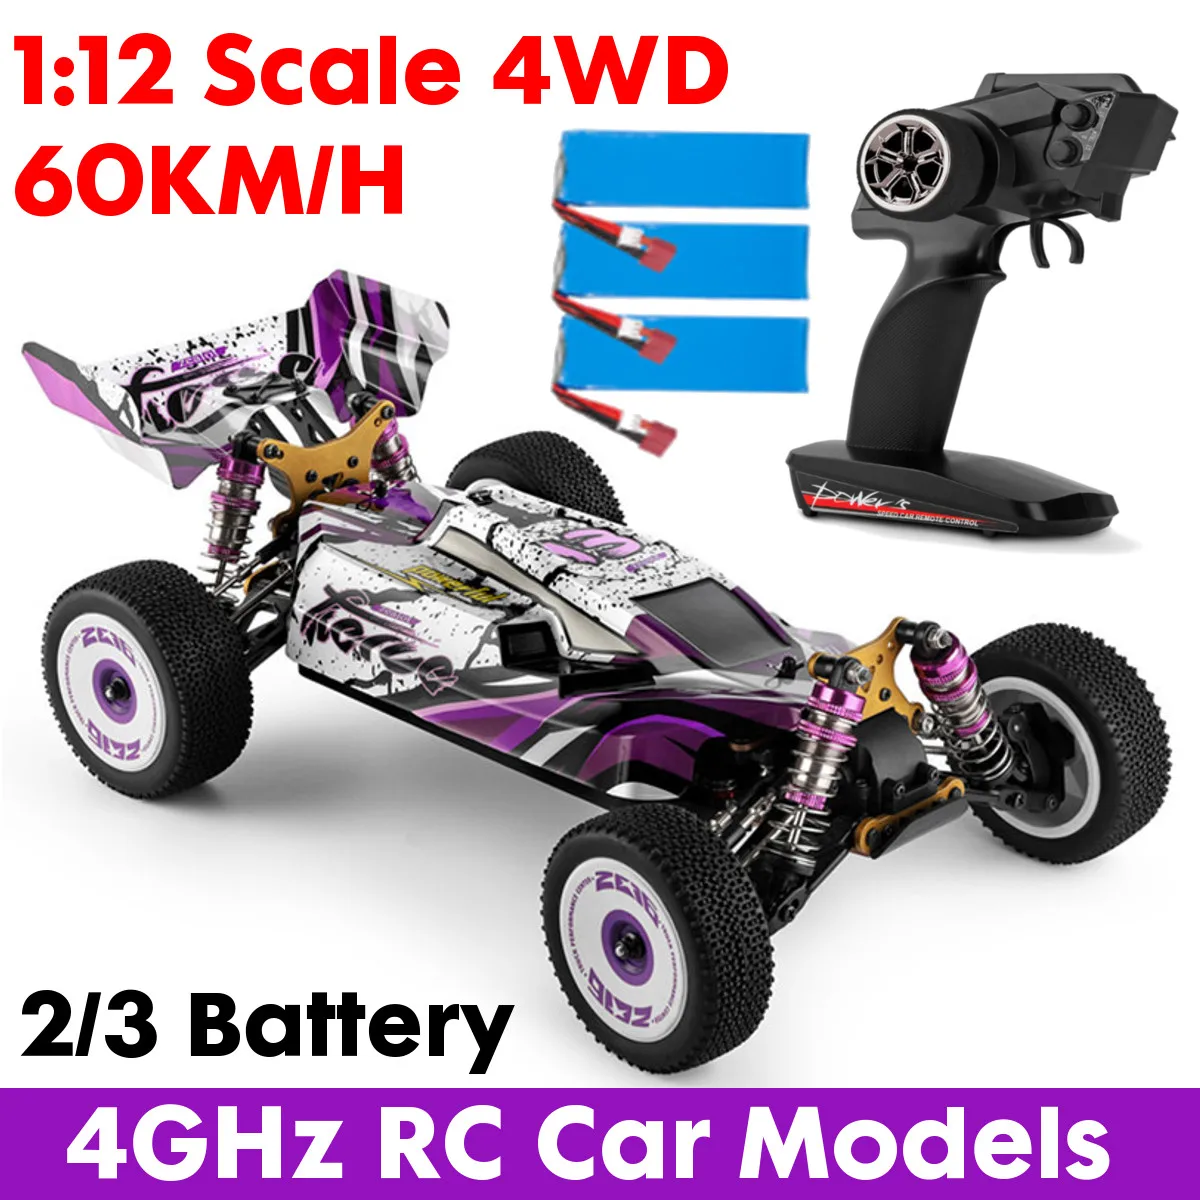 

Wltoys 124019 Радиоуправляемый автомобиль RTR 1/12 2,4G 4WD 60 км/ч Металлический шасси внедорожники 2200 мАч модели детские игрушки подарок гоночный Дрифт